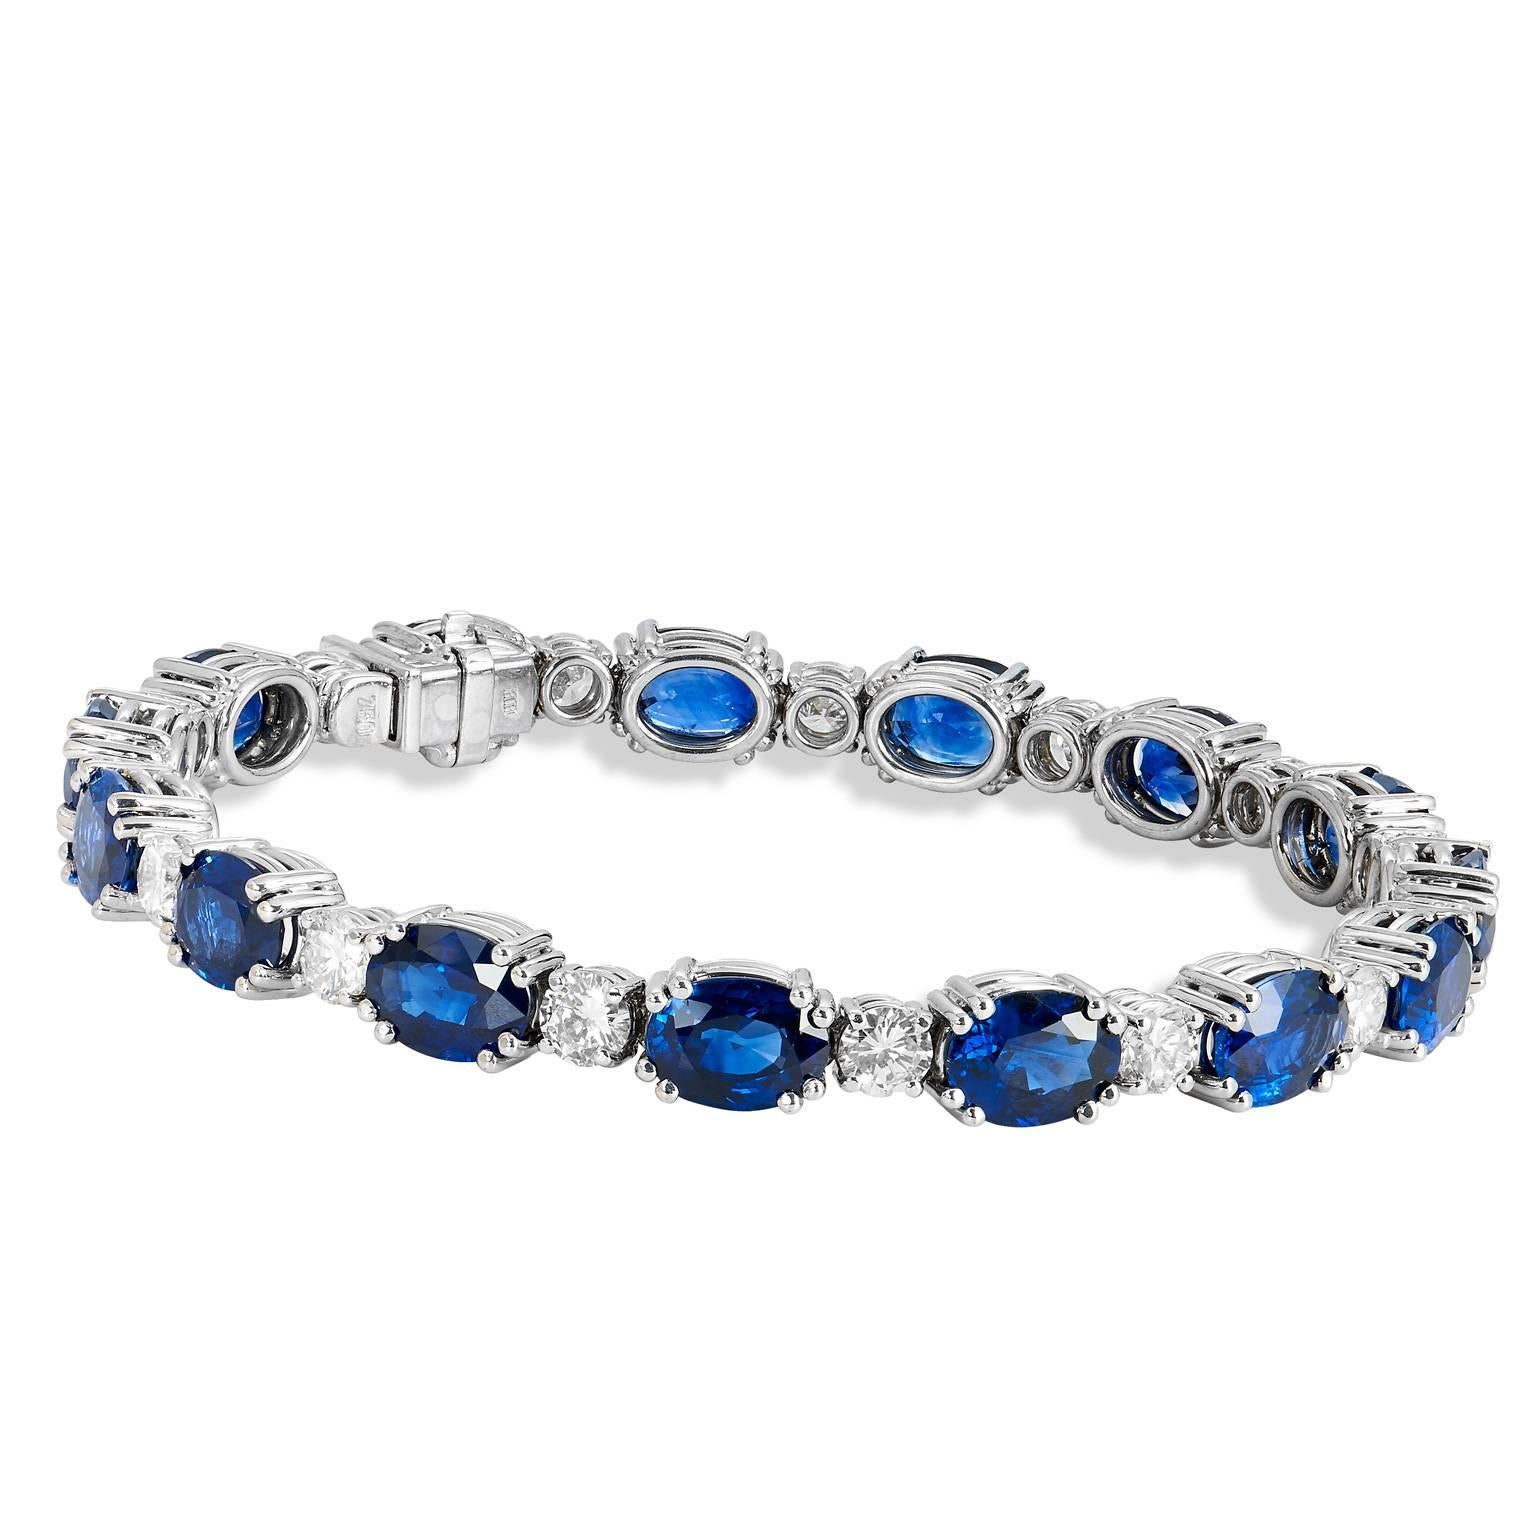 22.77 Carats Royal Blue Sapphires & 3.87 Carat Diamond Gold Tennis Bracelet

Le saphir est depuis longtemps apprécié pour ses étonnantes teintes bleues et ses associations célestes. Pierre précieuse de rêve pour les joailliers, le saphir offre